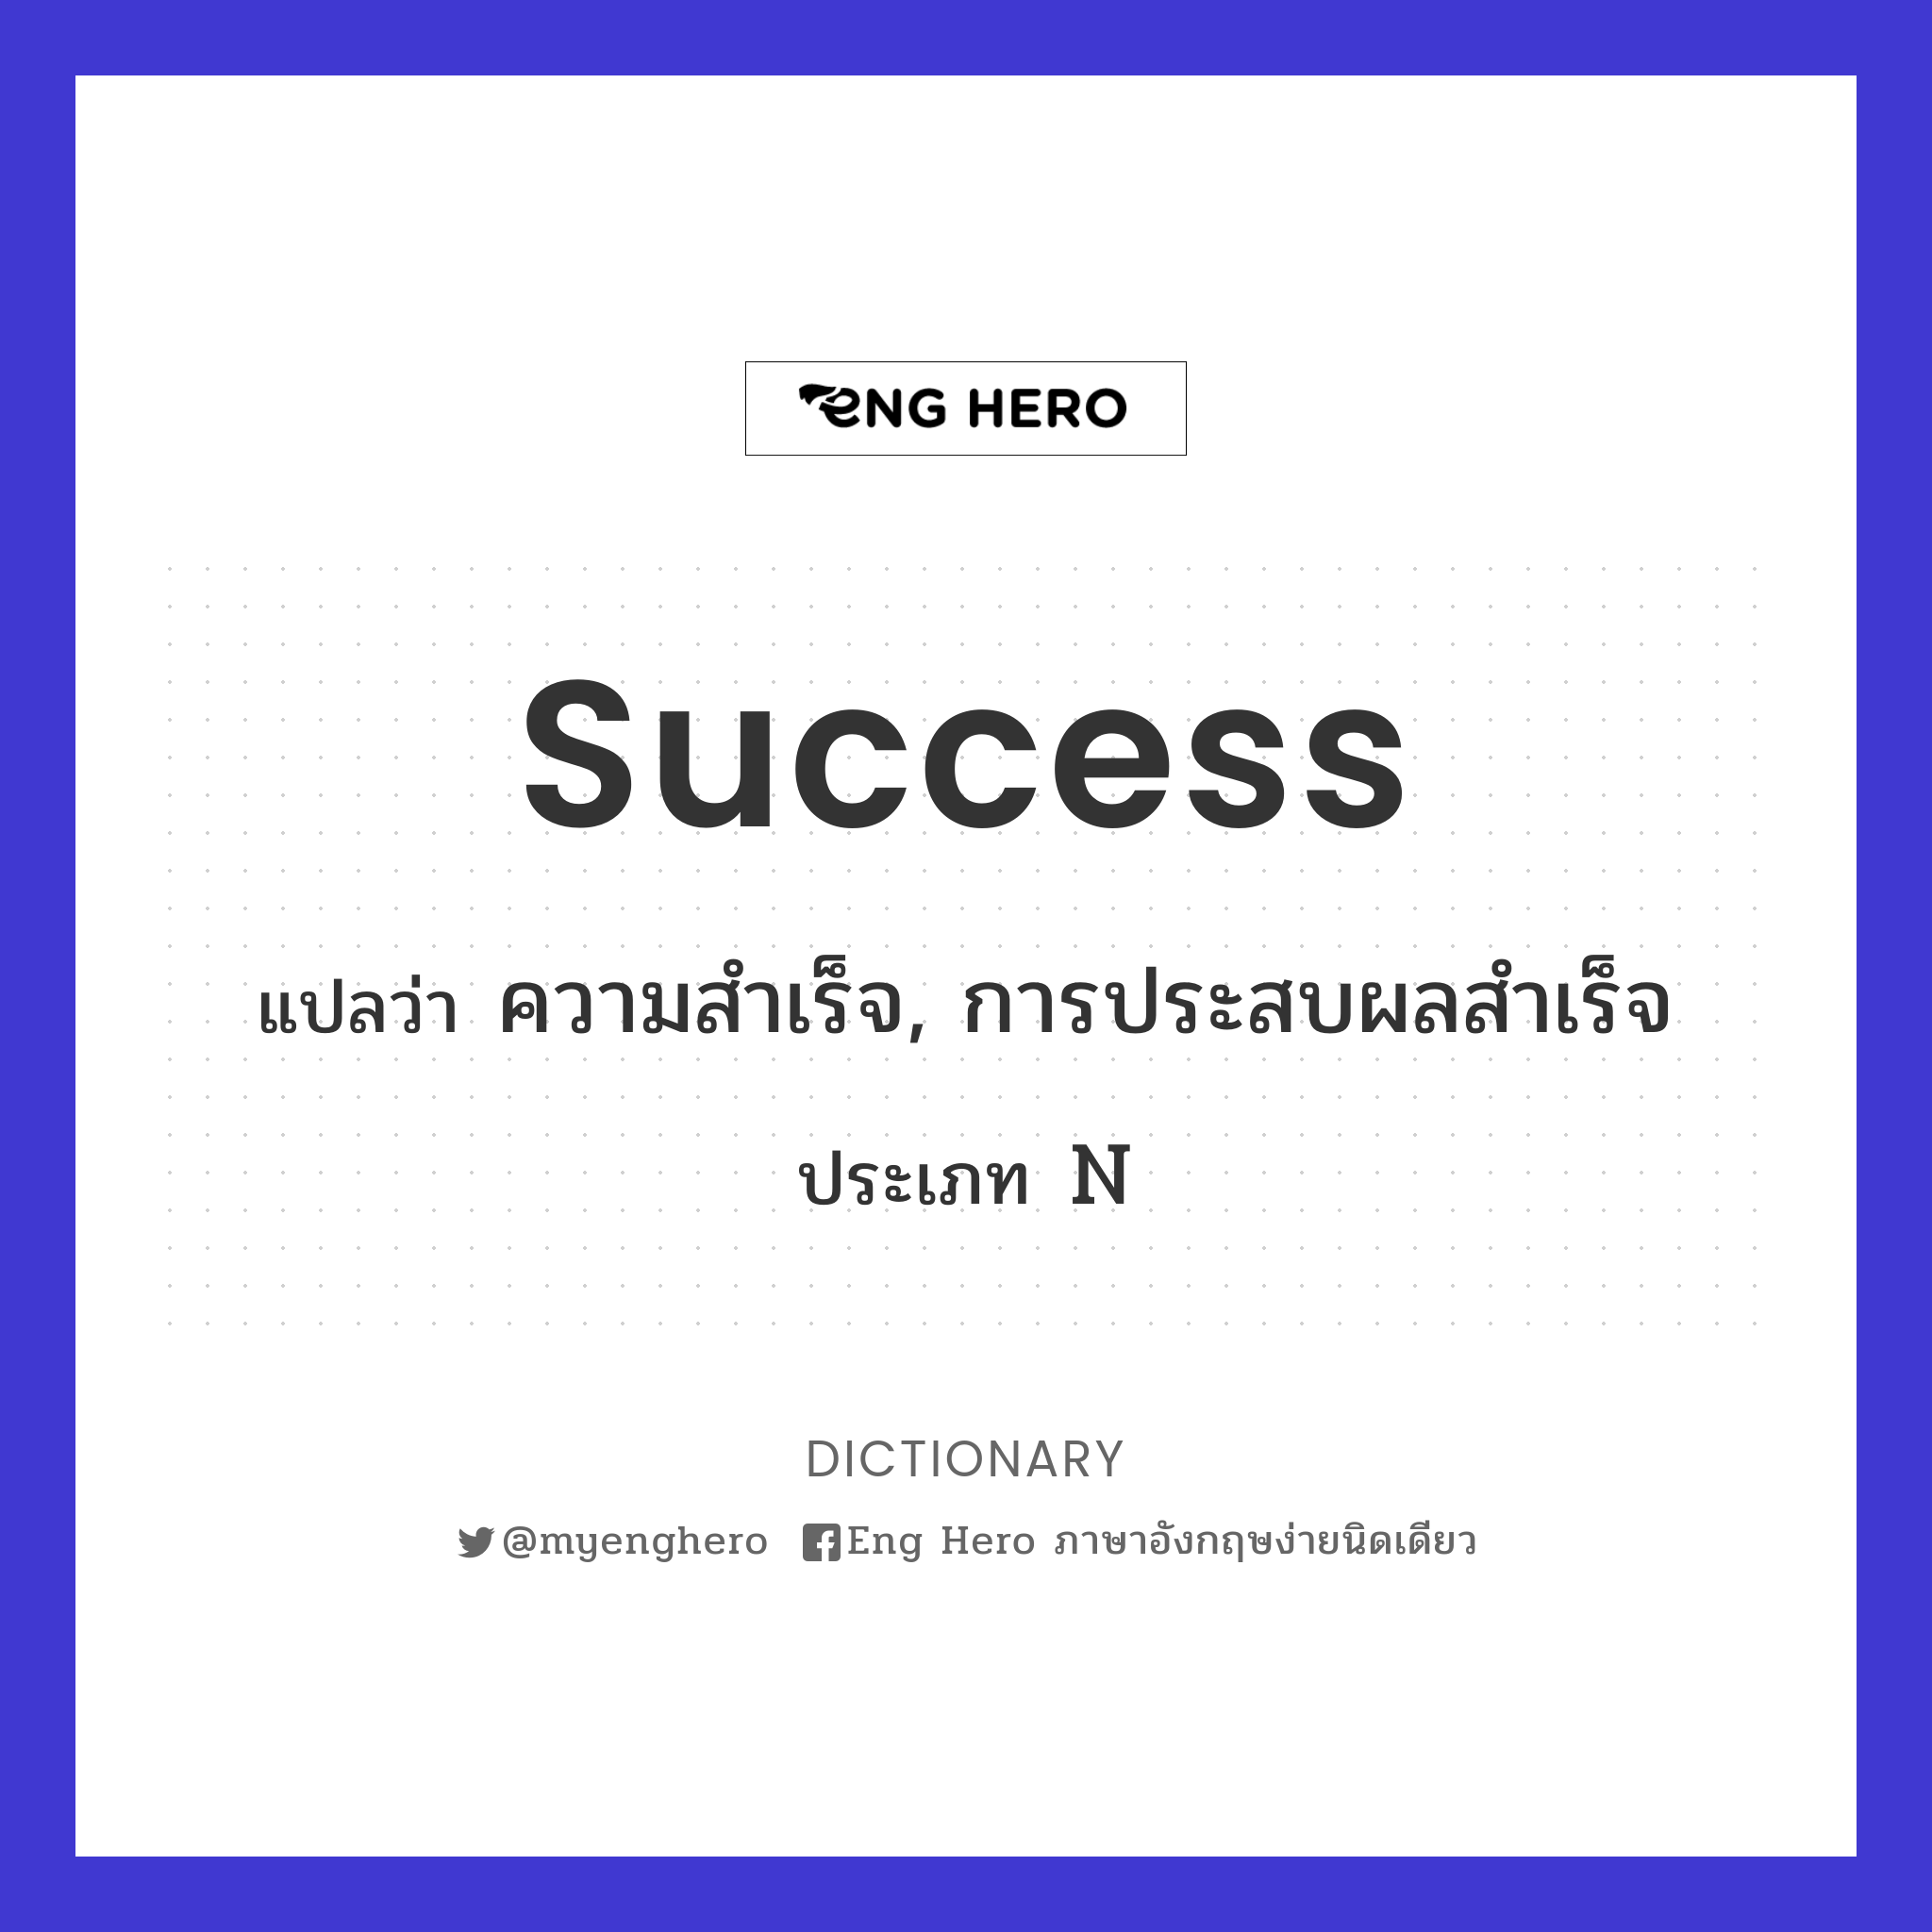 success